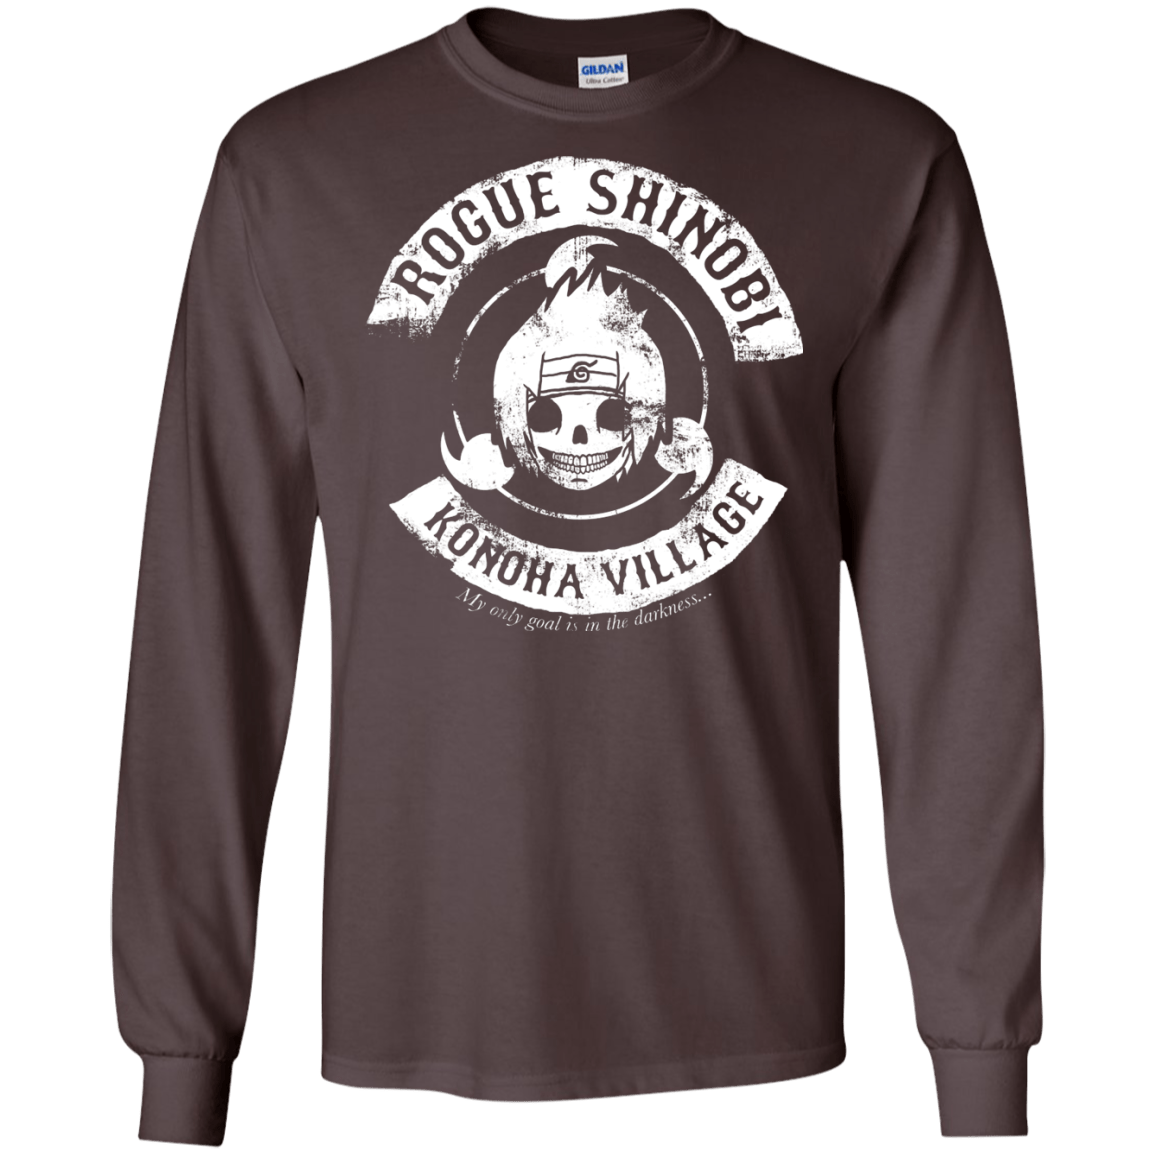 Rogue Shinobi Men's Long Sleeve T-Shirt